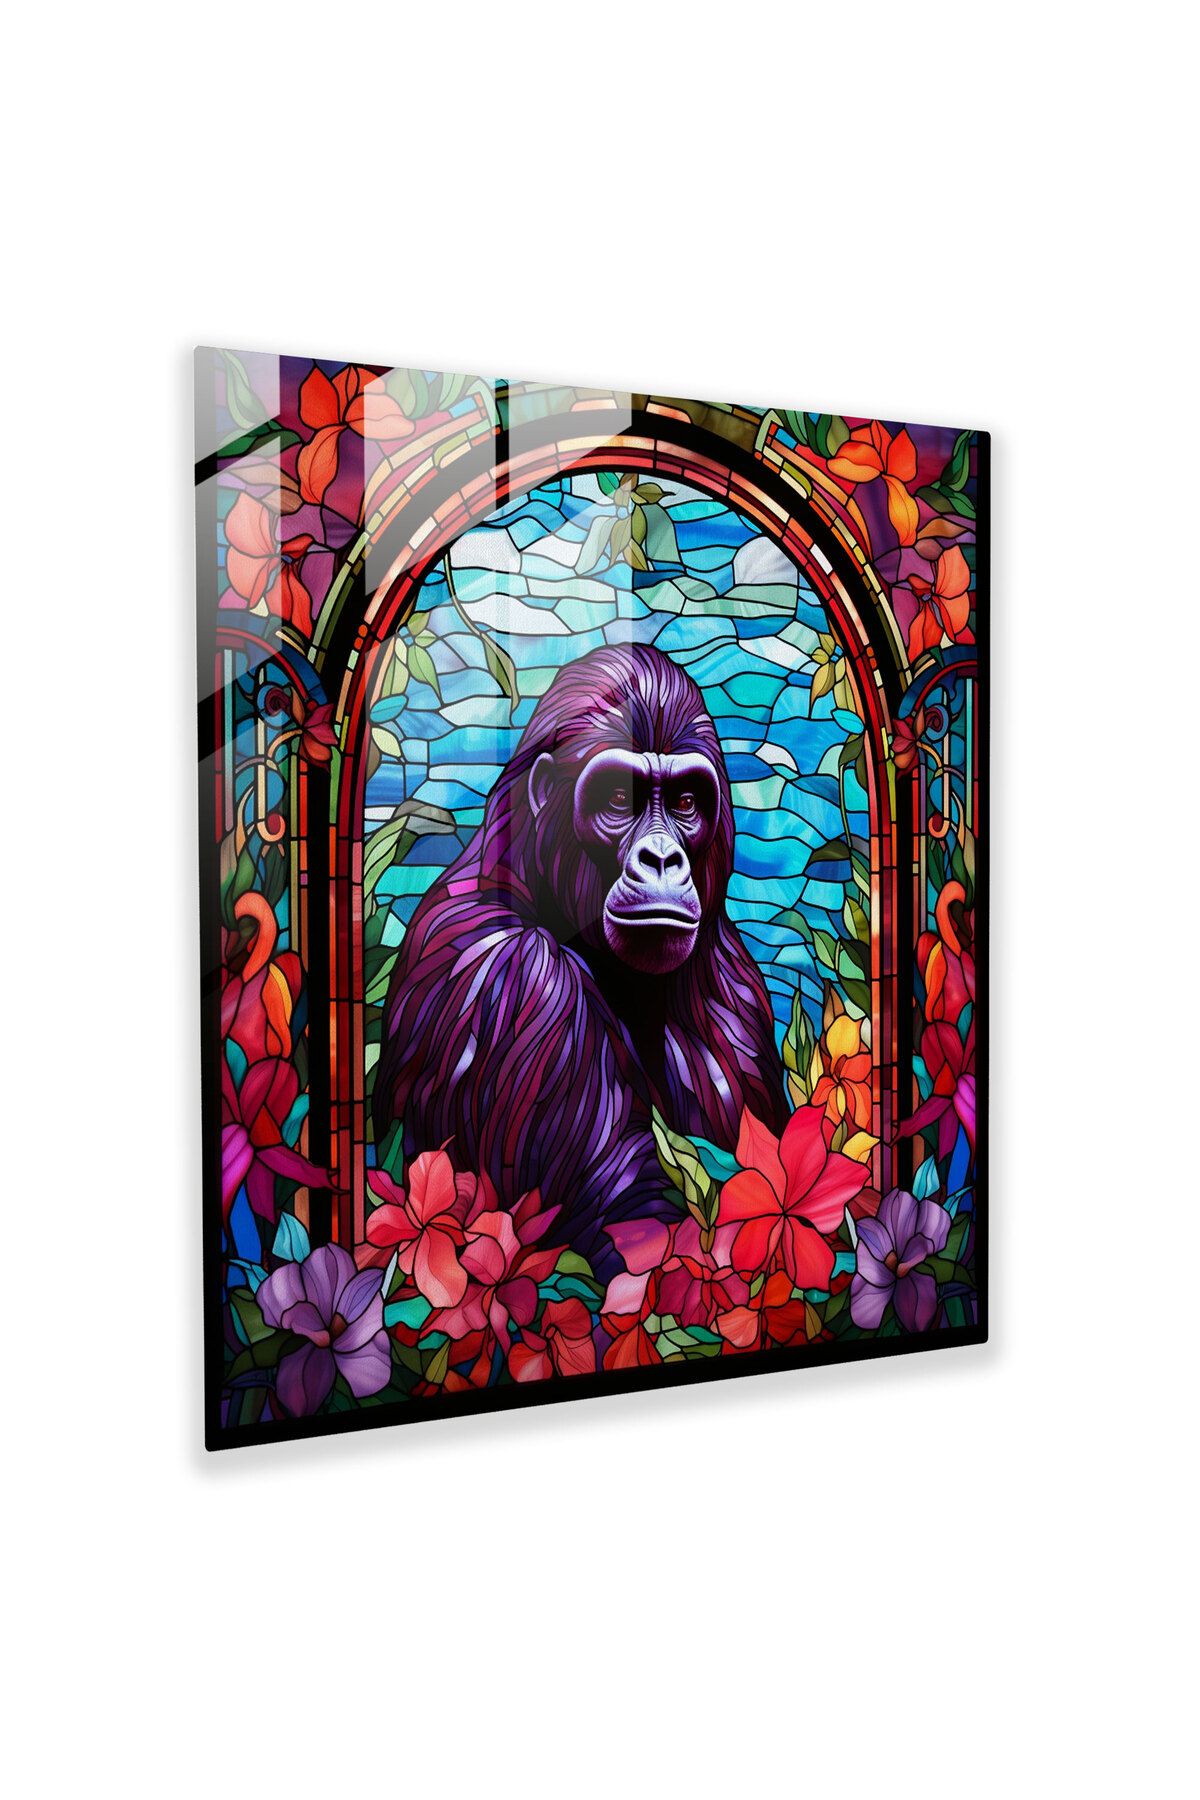 PaintedAnarchy Vitray duvar sanatı, renkli goril, goril, duvar dekorasyonu, vitray sanat eseri